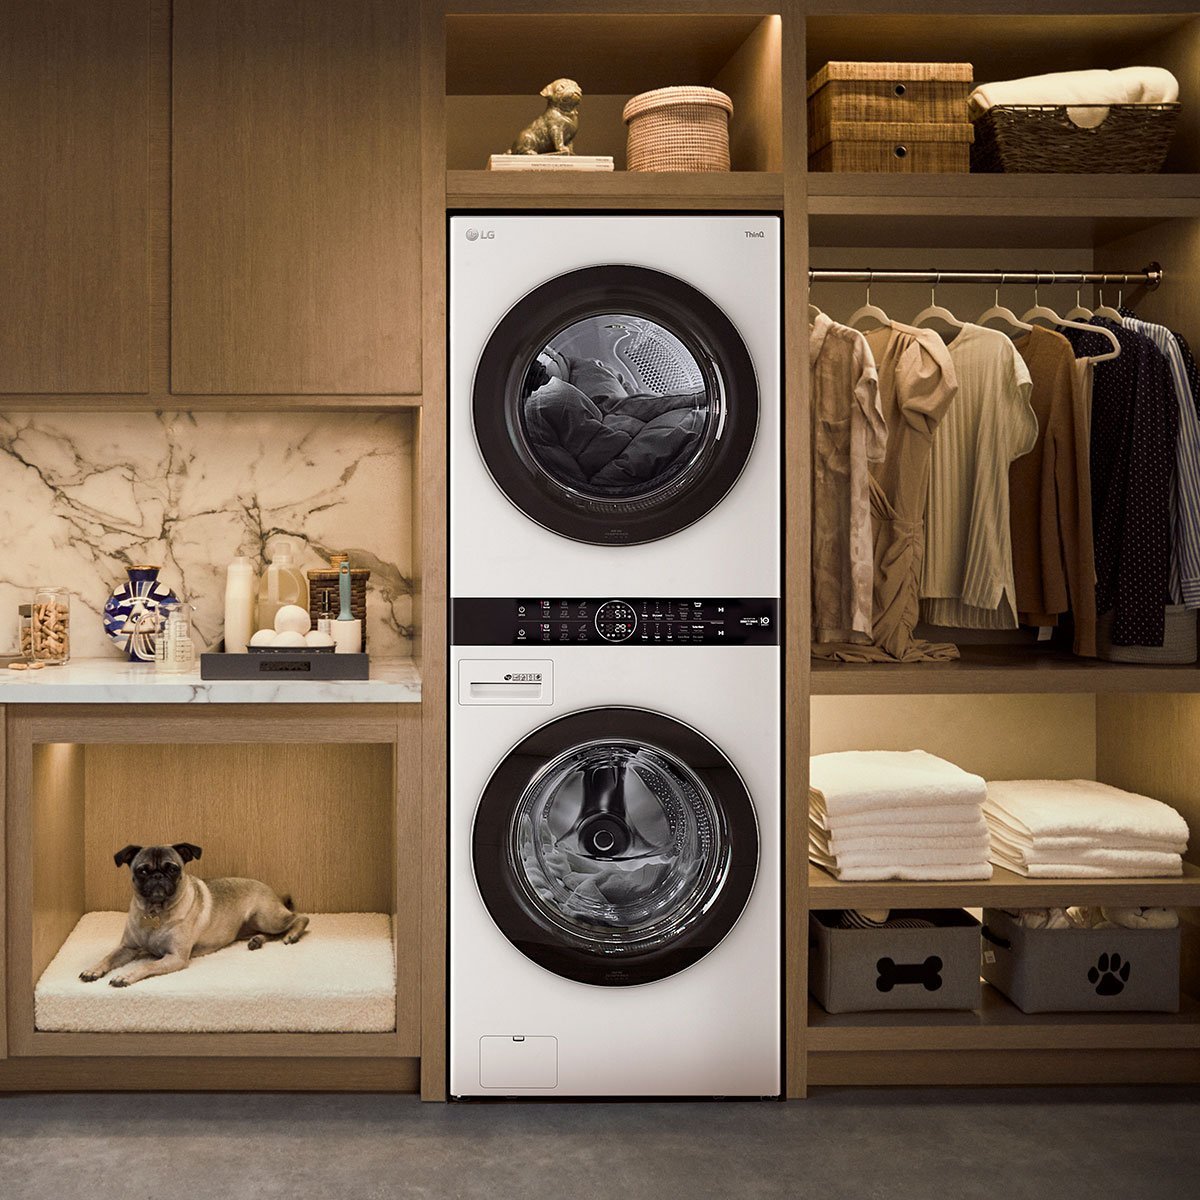 Sears México - ¡Llévate esta hermosa lavavajillas #LG con